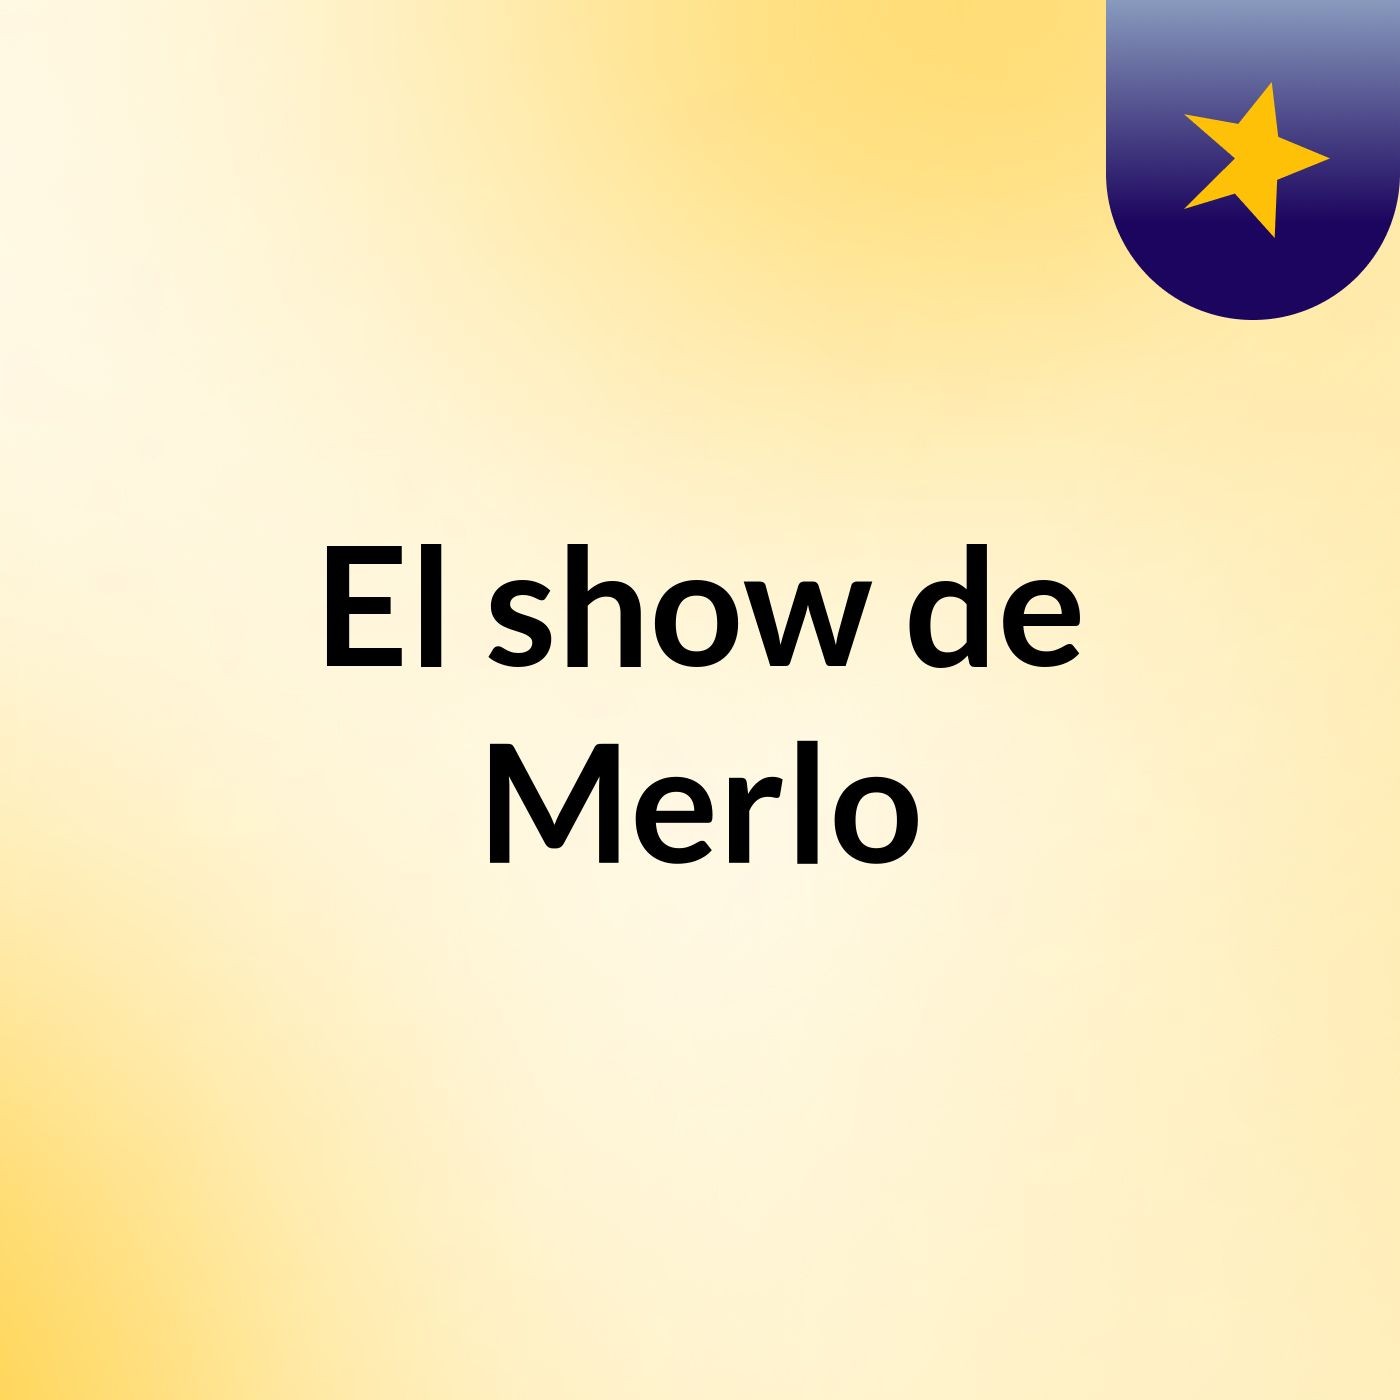 El show de Merlo